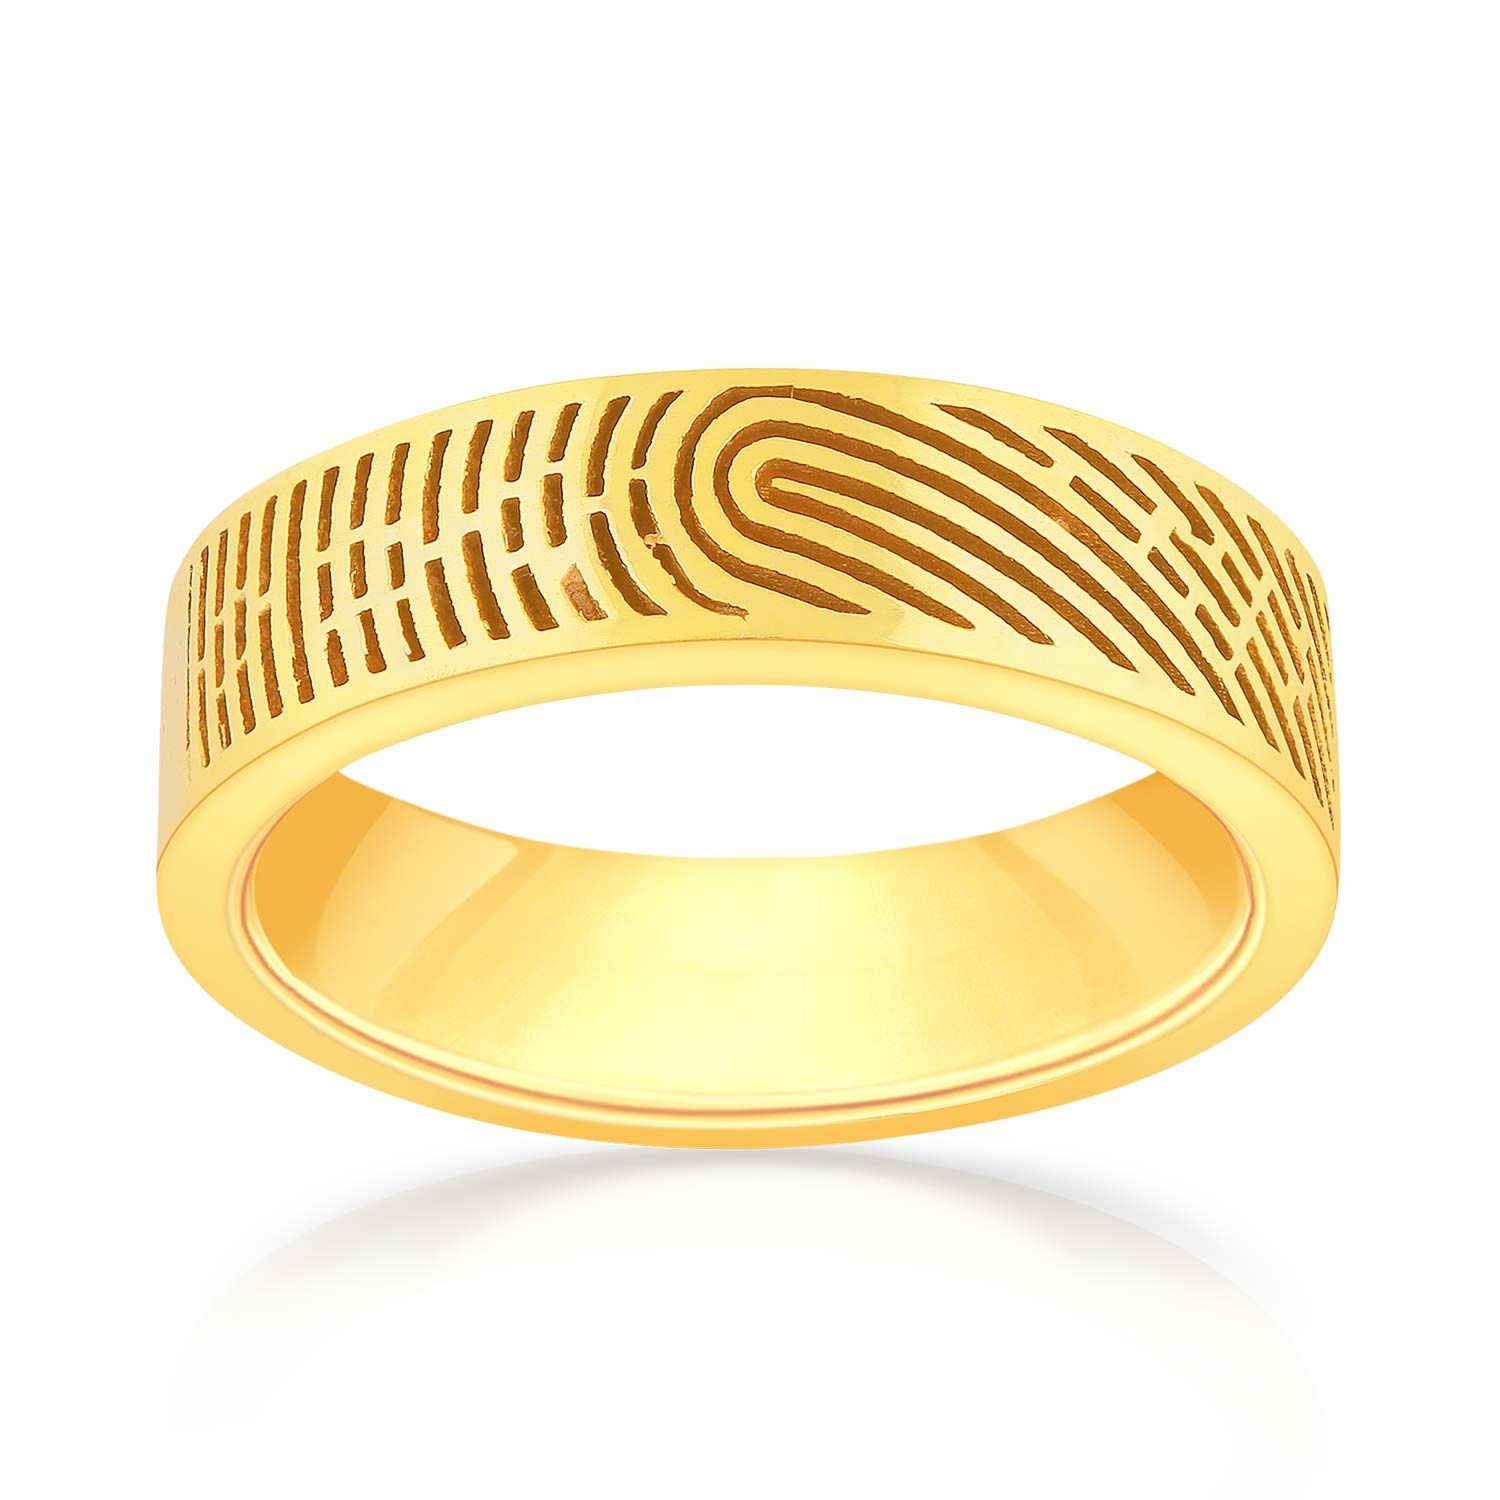 Buy Malabar Gold Ring FROPLPR001G for Men Online | Malabar Gold & Diamonds